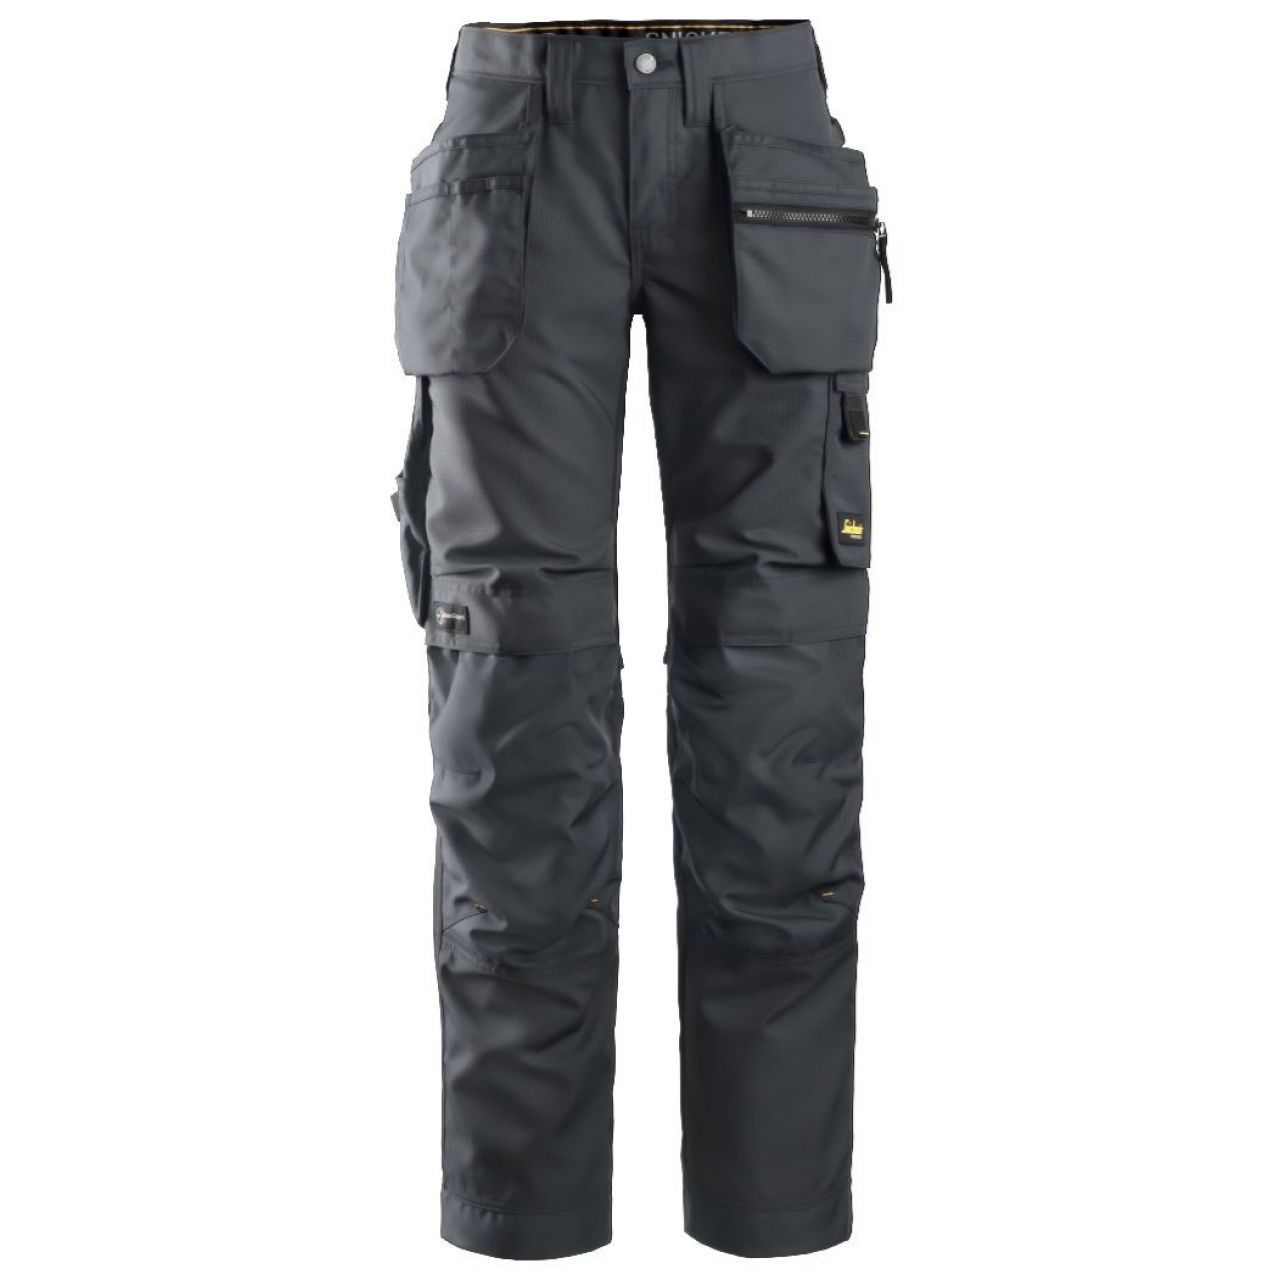 Pantalon de mujer AllroundWork+ con bolsillos flotantes gris acero-negro talla 020